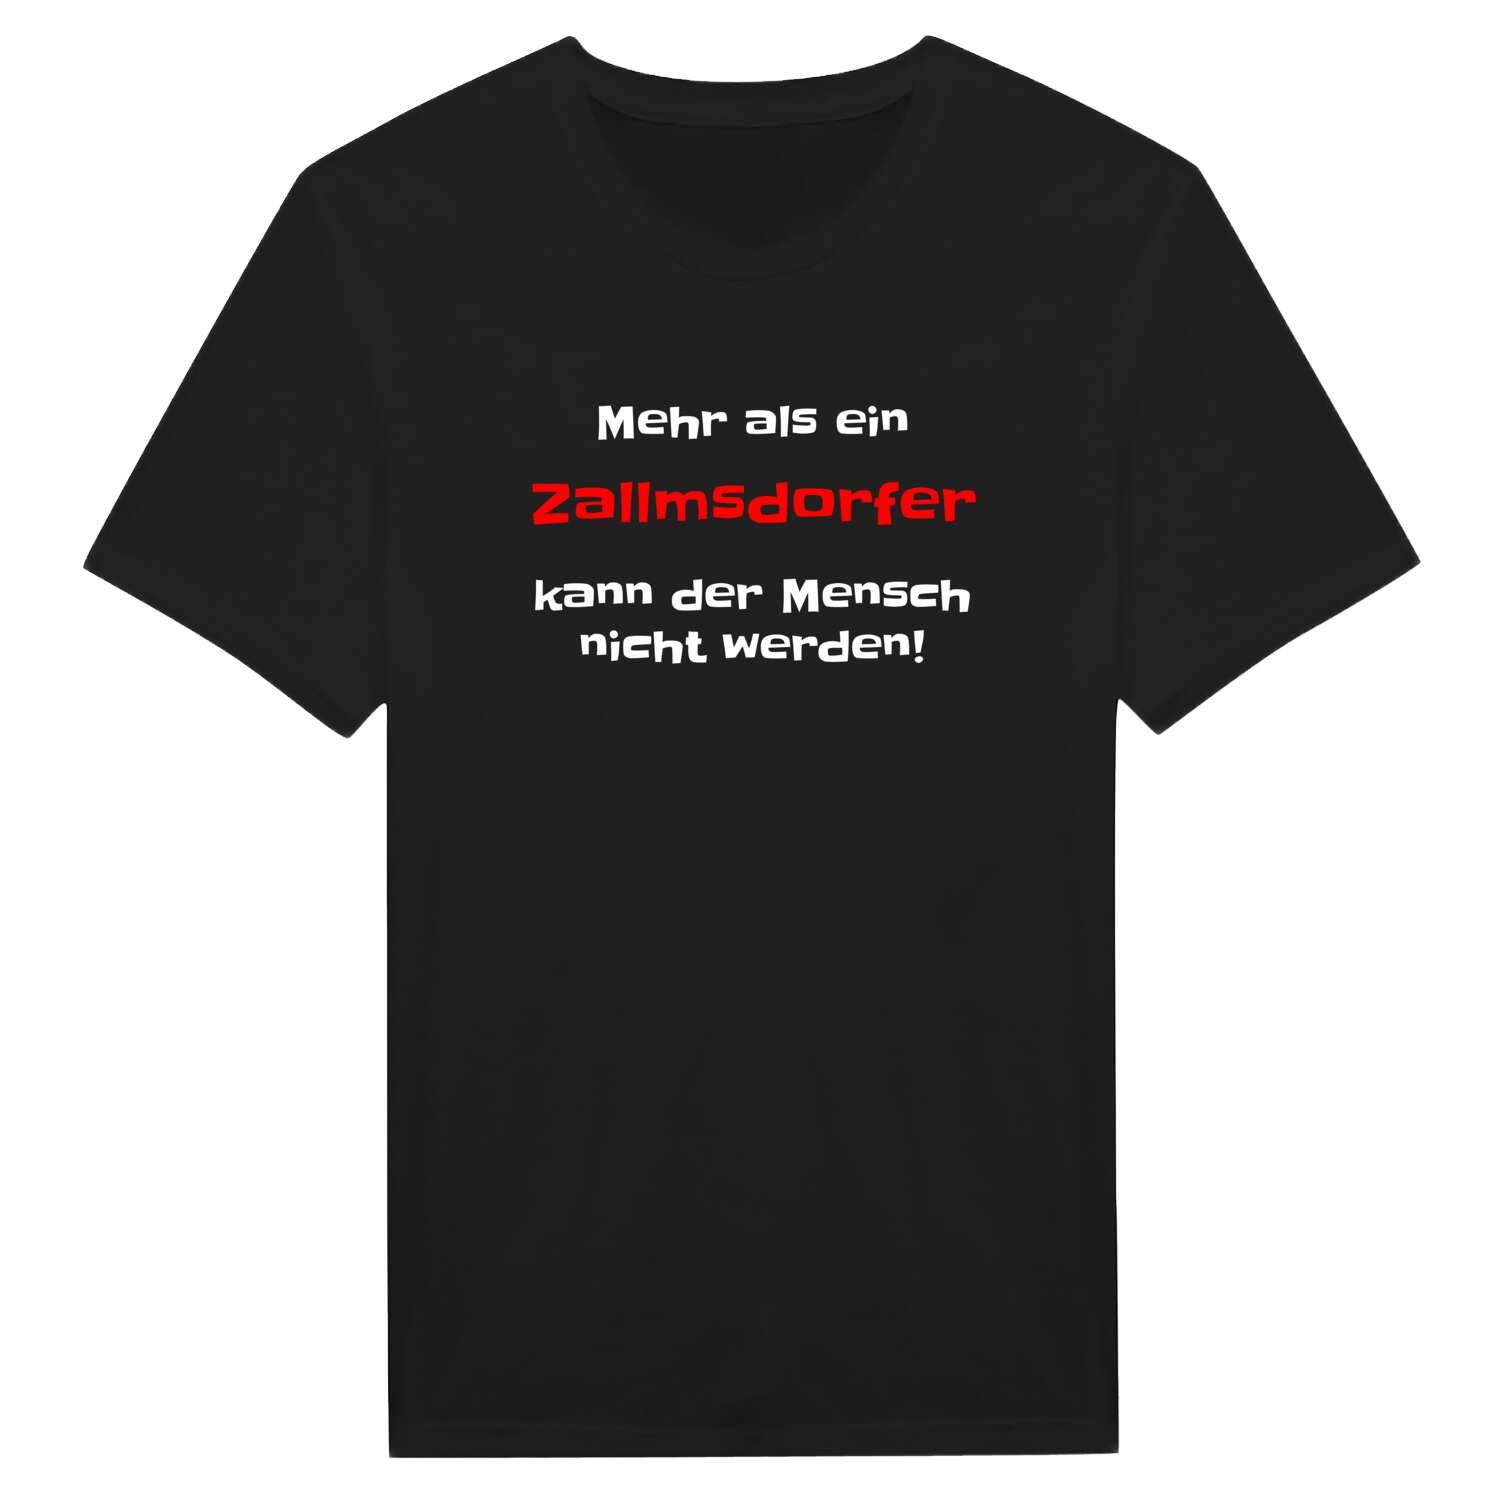 Zallmsdorf T-Shirt »Mehr als ein«